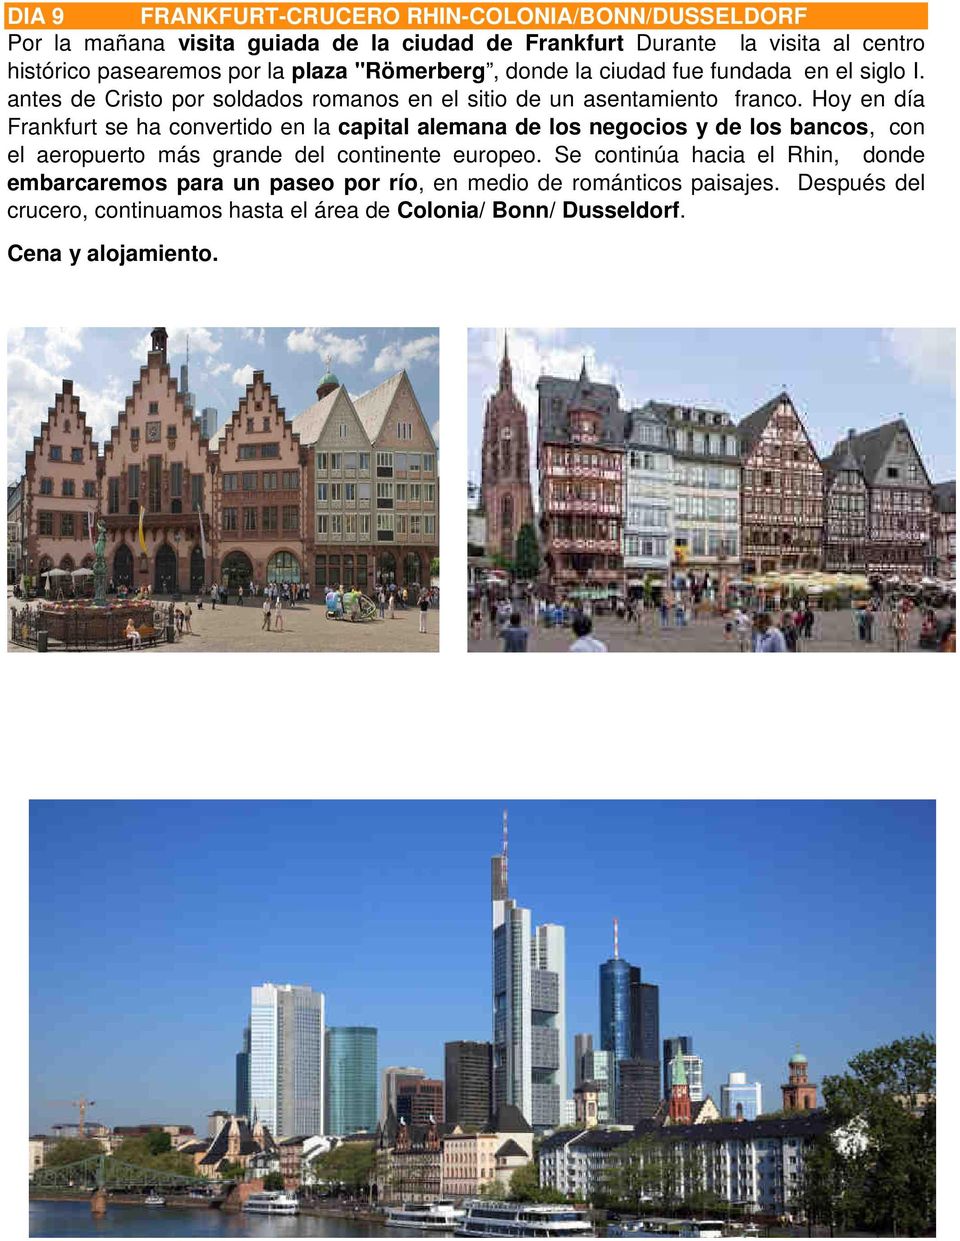 Hoy en día Frankfurt se ha convertido en la capital alemana de los negocios y de los bancos, con el aeropuerto más grande del continente europeo.